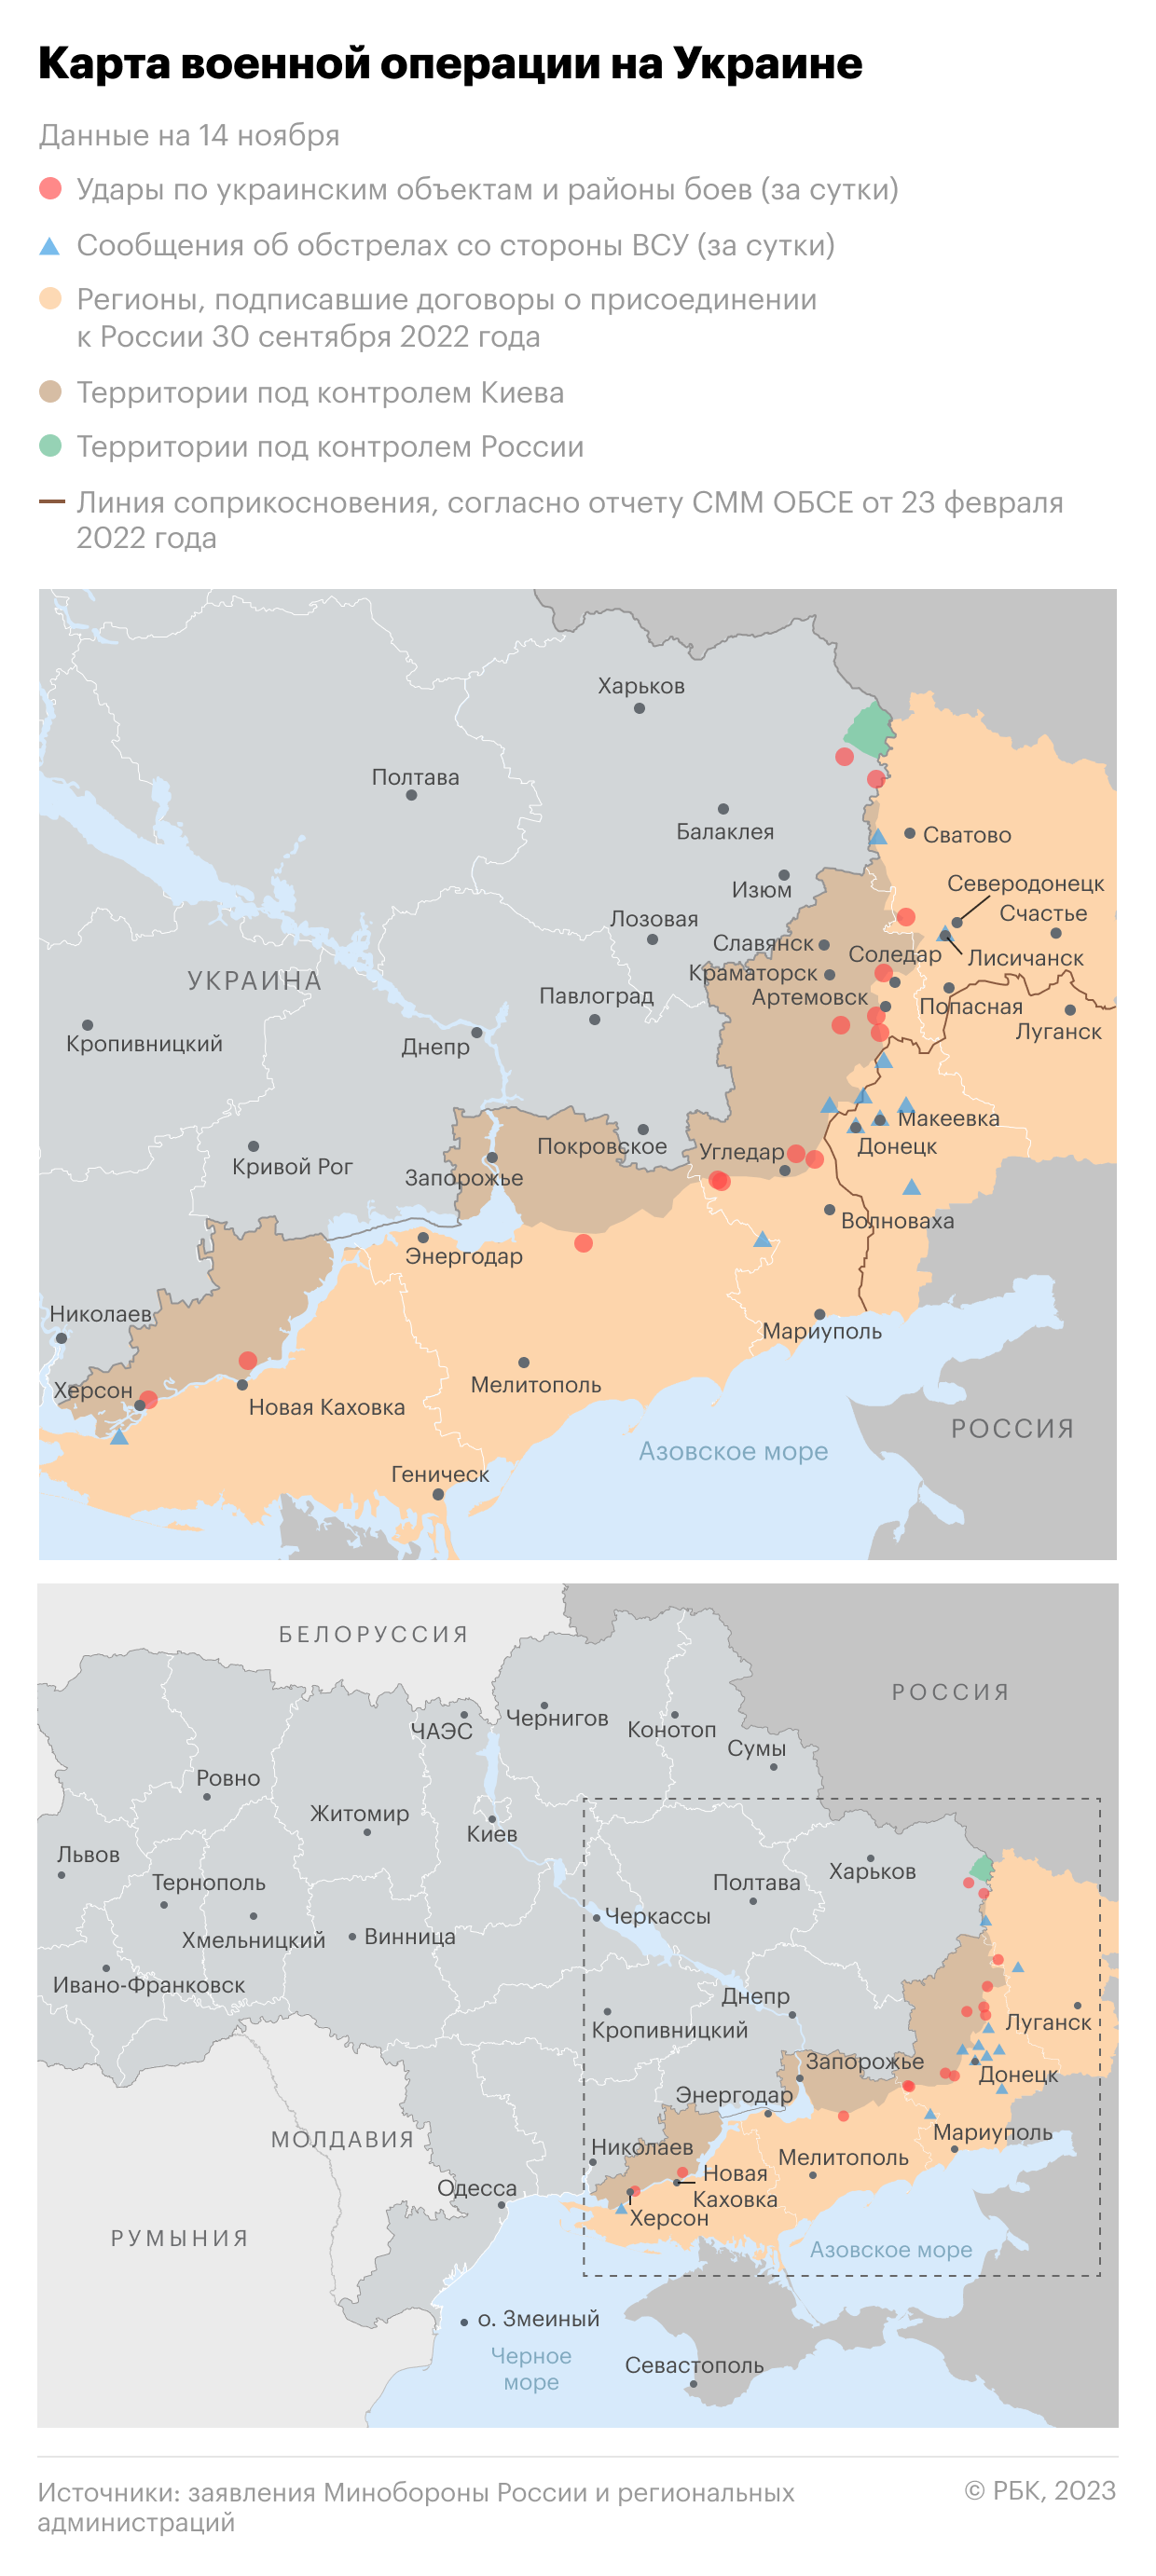 Военная операция на Украине. Карта на 14 ноября